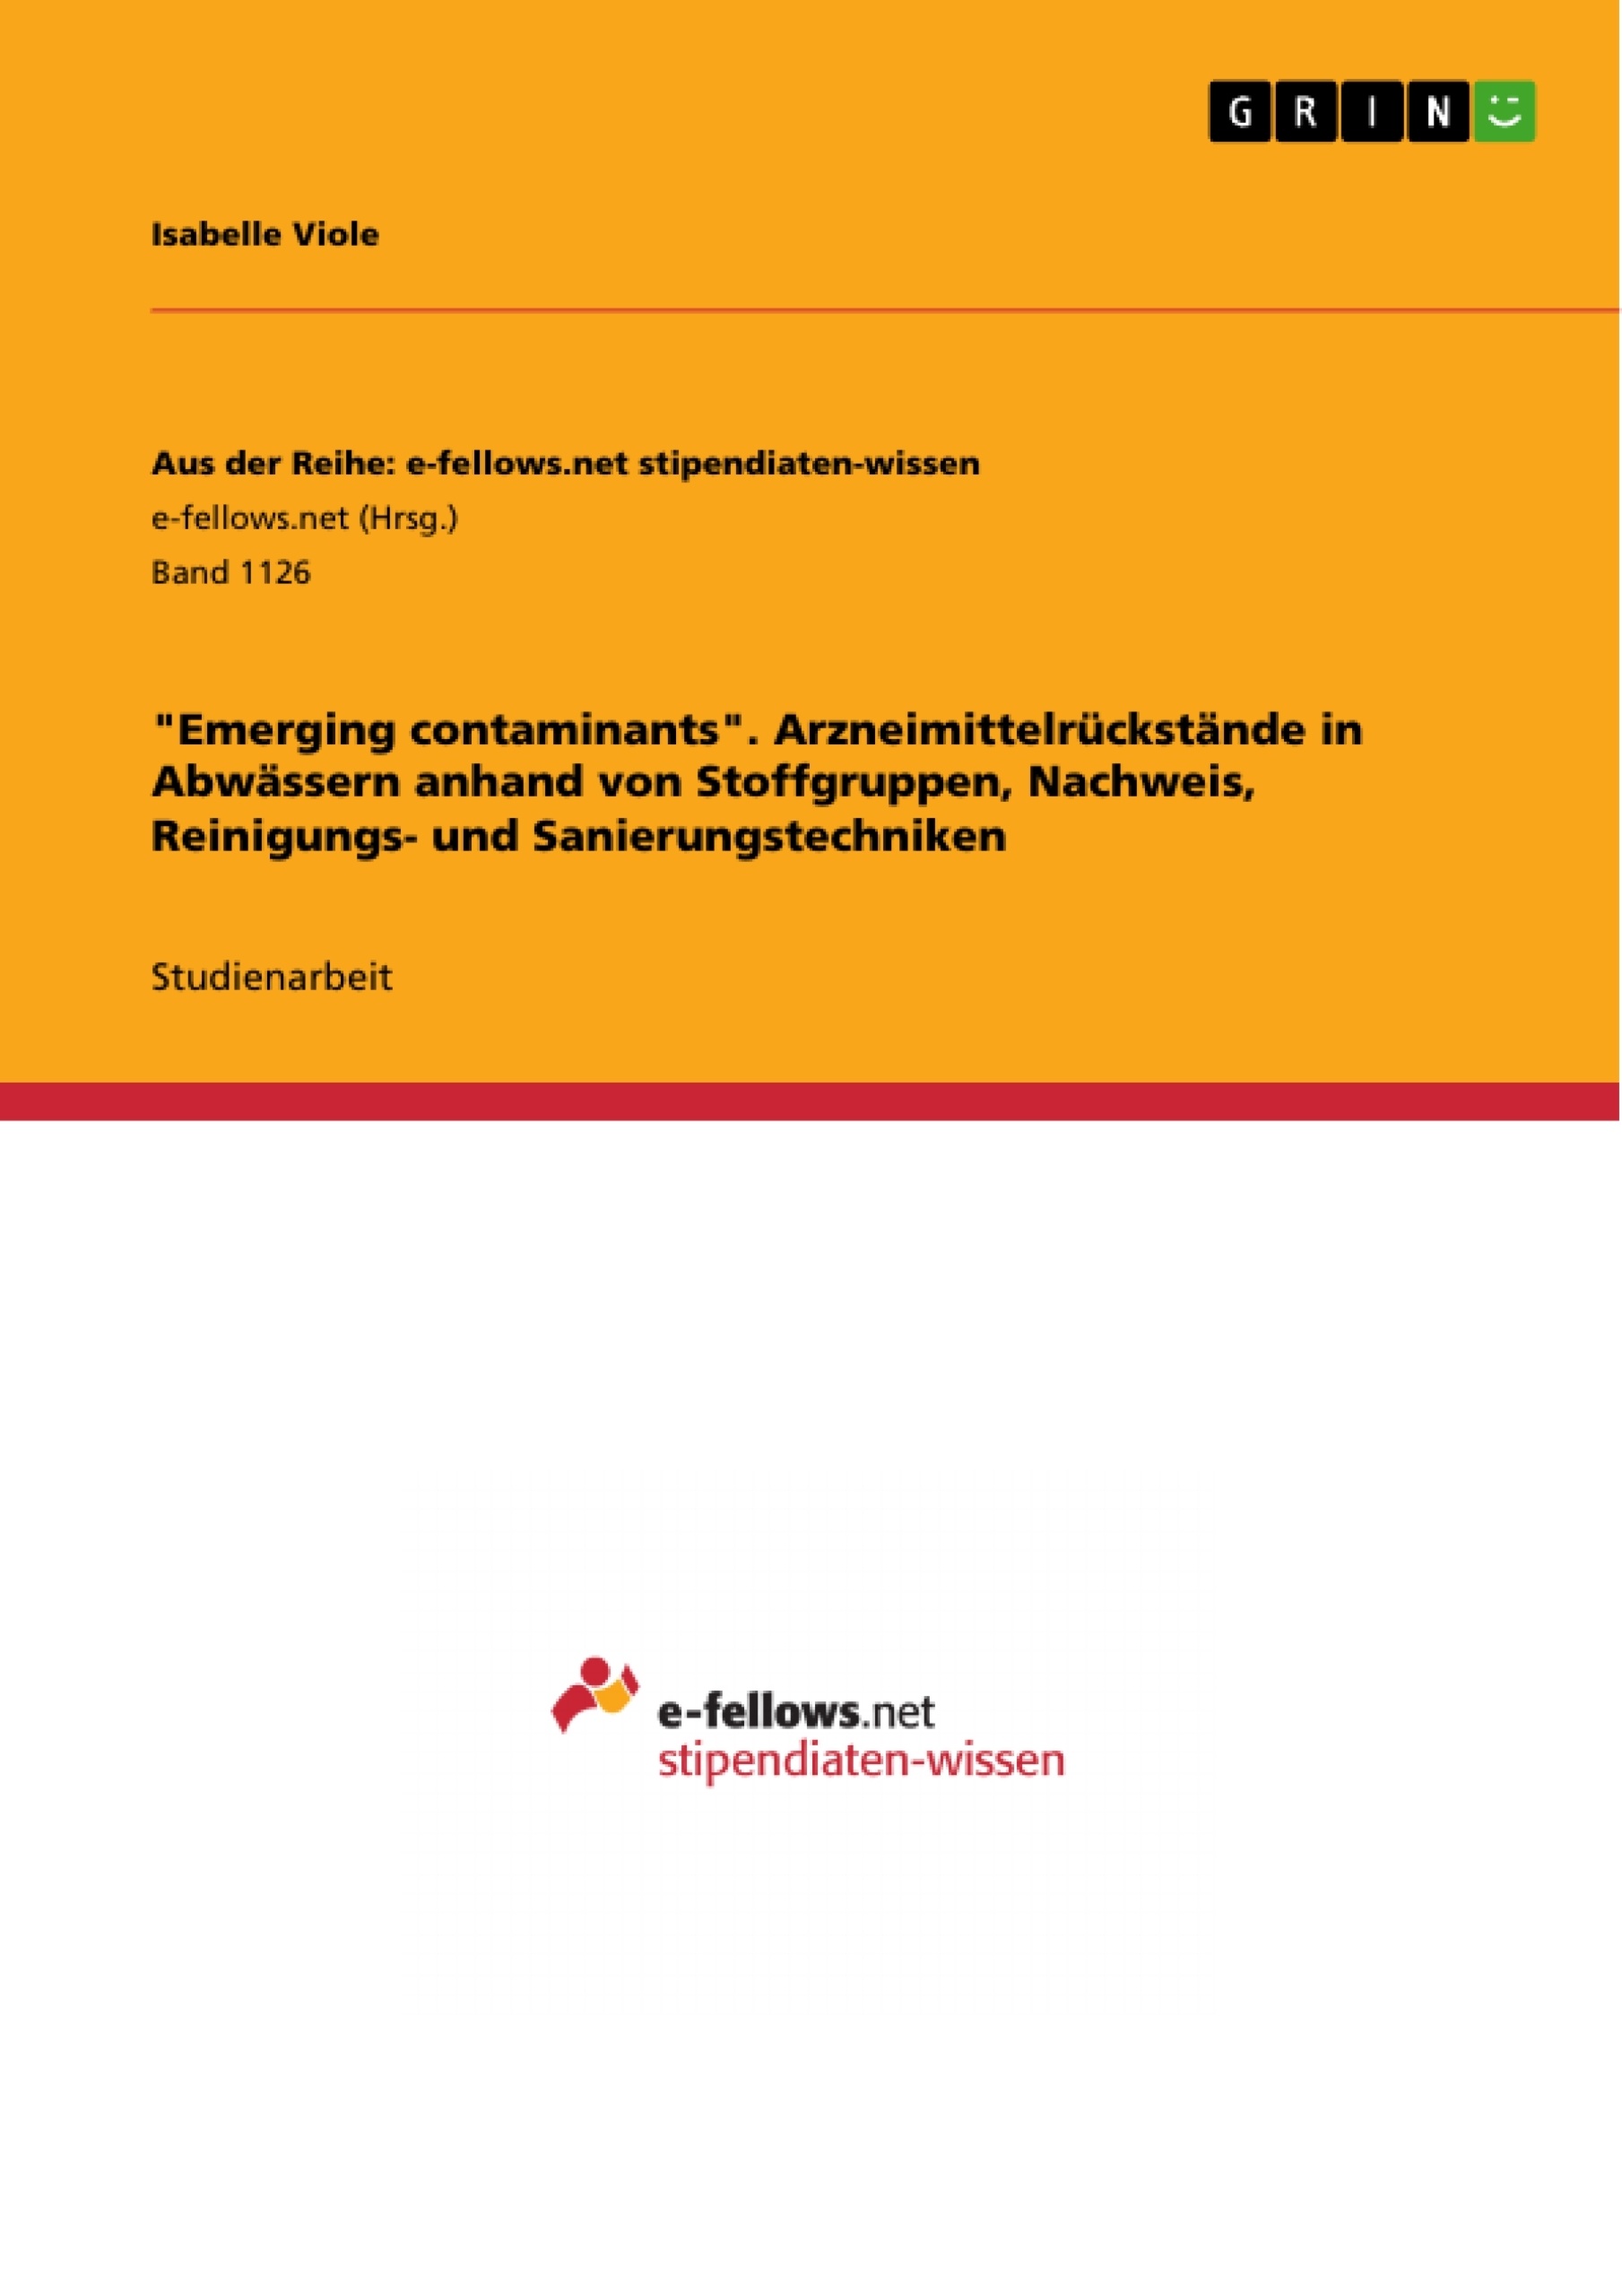 Title: "Emerging contaminants". Arzneimittelrückstände in Abwässern anhand von Stoffgruppen, Nachweis, Reinigungs- und Sanierungstechniken